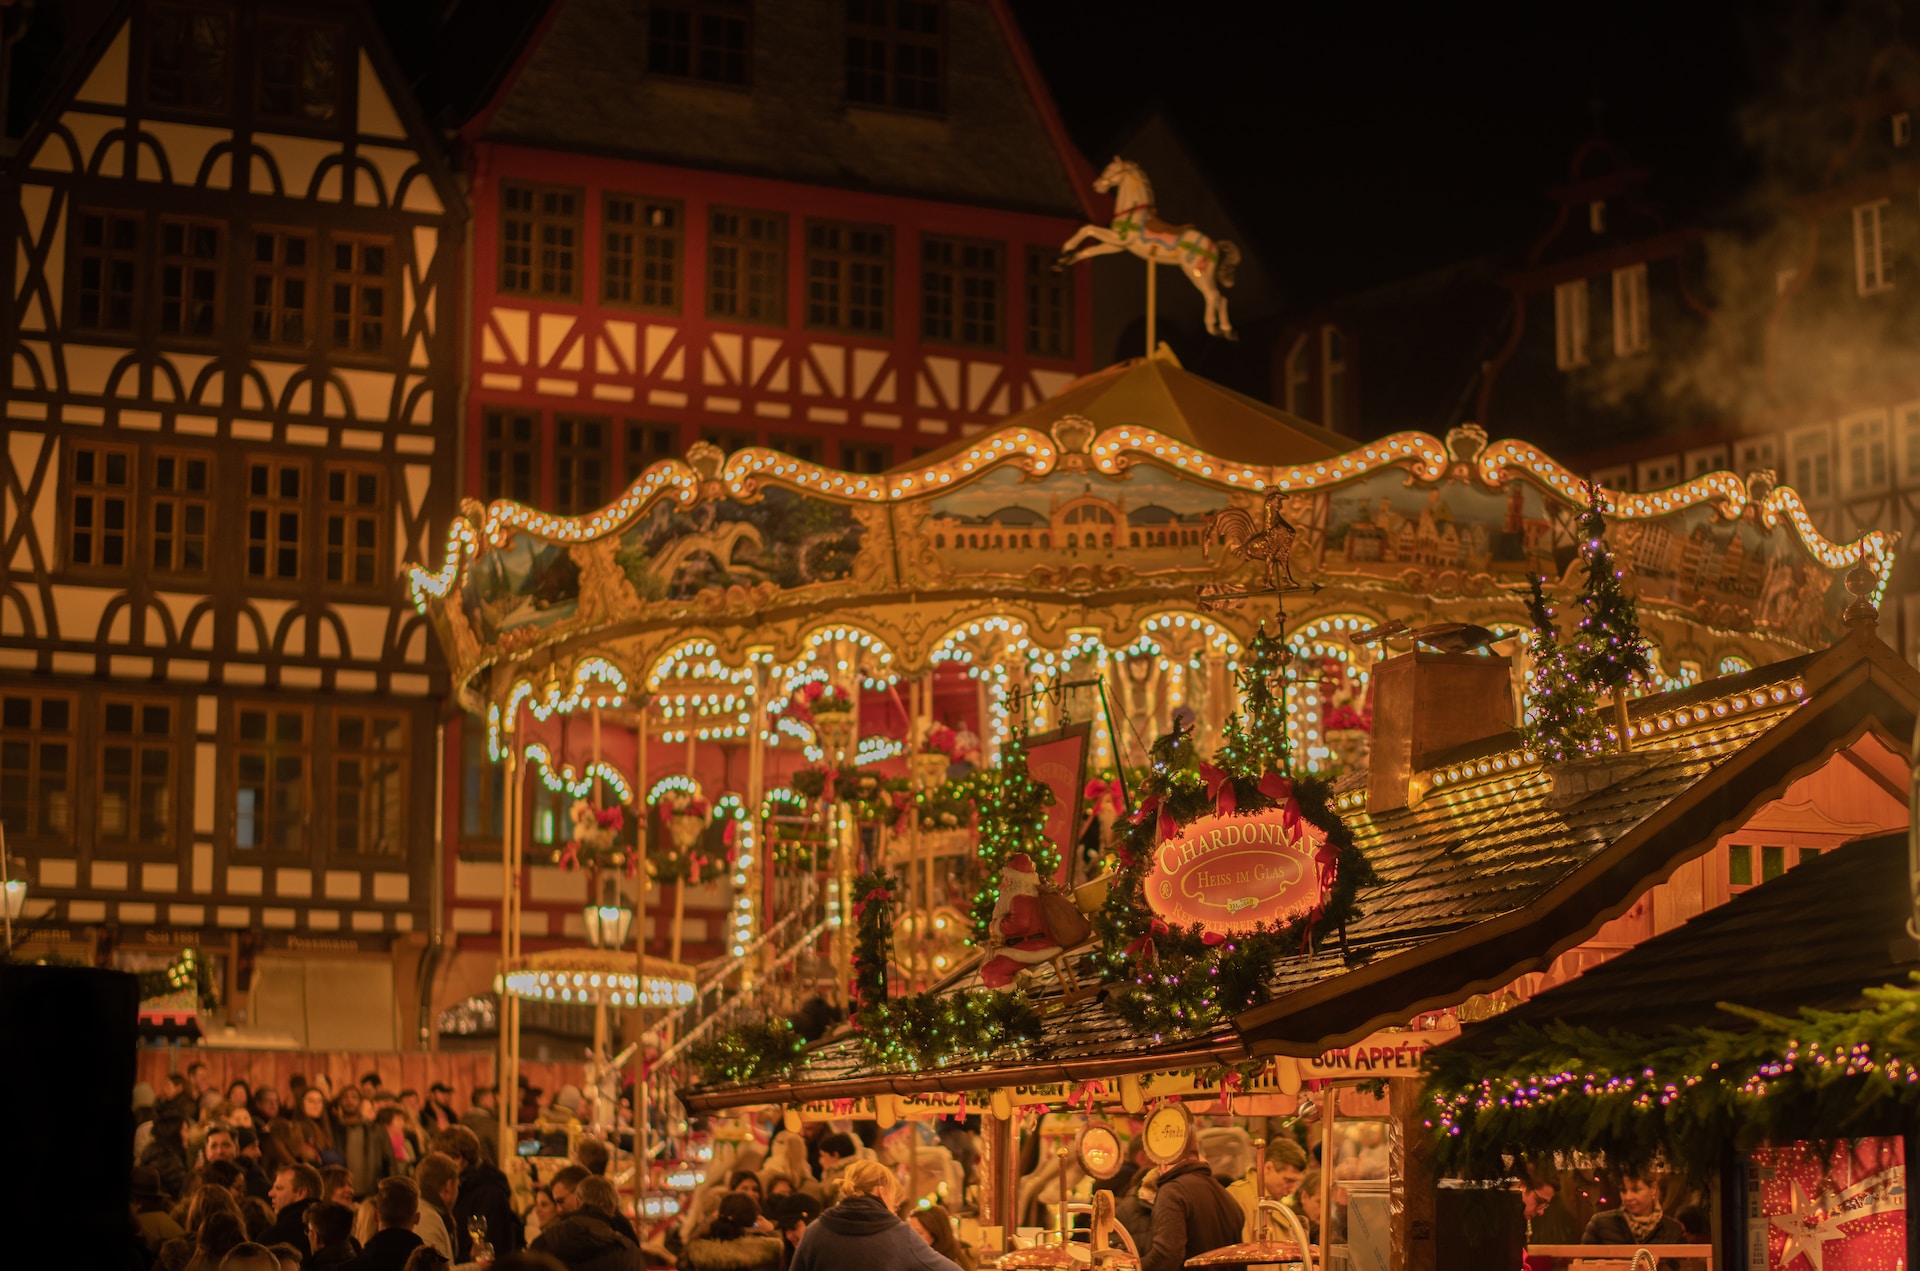 Οι 10 καλύτερες χριστουγεννιάτικες αγορές στην Ευρώπη για να επισκεφθείς